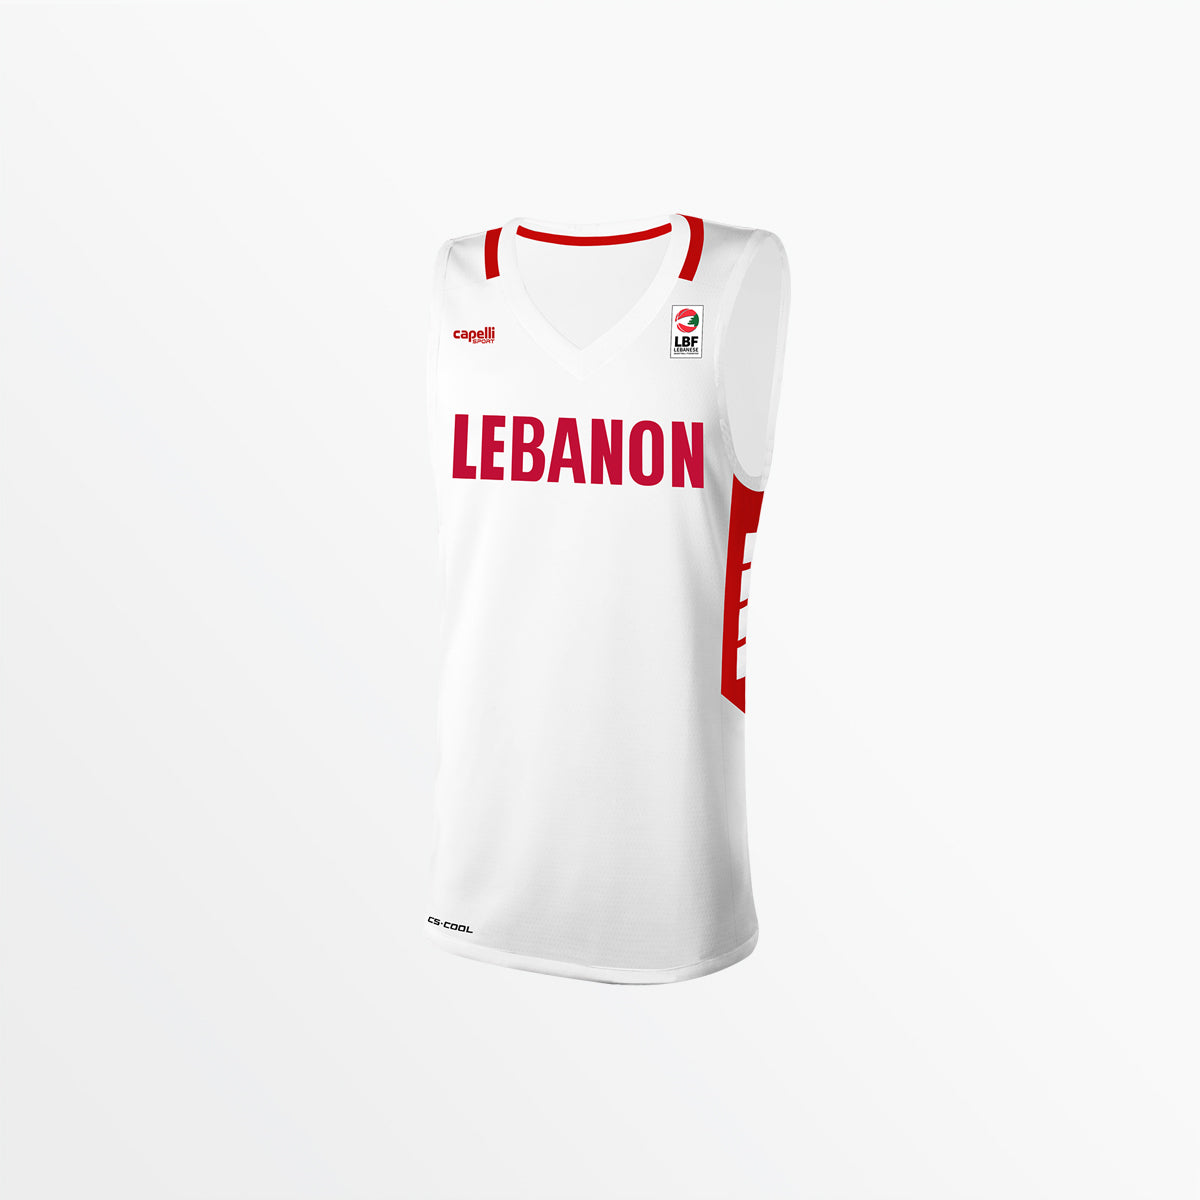 Couver le bandeau de basket-ball à ailes longues et Liban